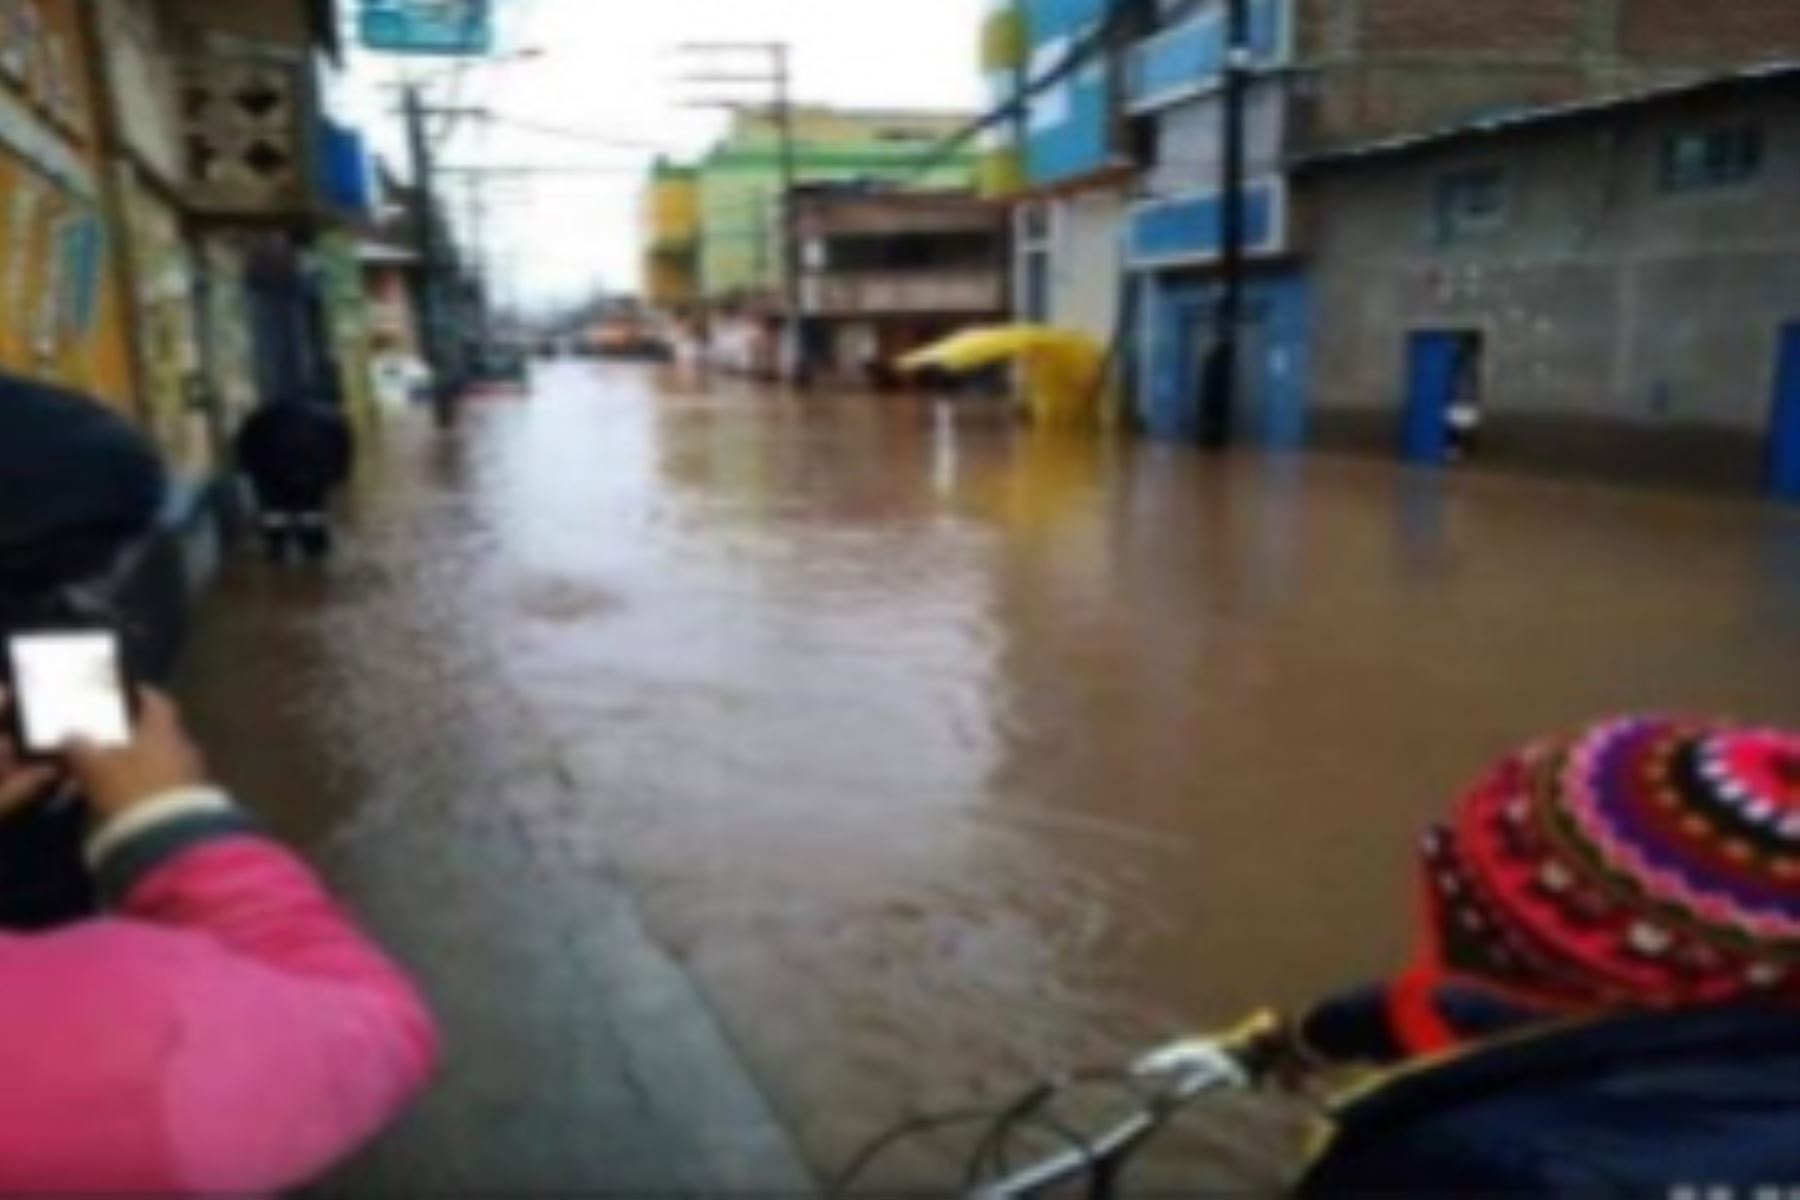 Intensas precipitaciones líquidas y sólidas ocasionaron la acumulación de aguas en las calles de Ayaviri, capital de la provincia puneña de Melgar.